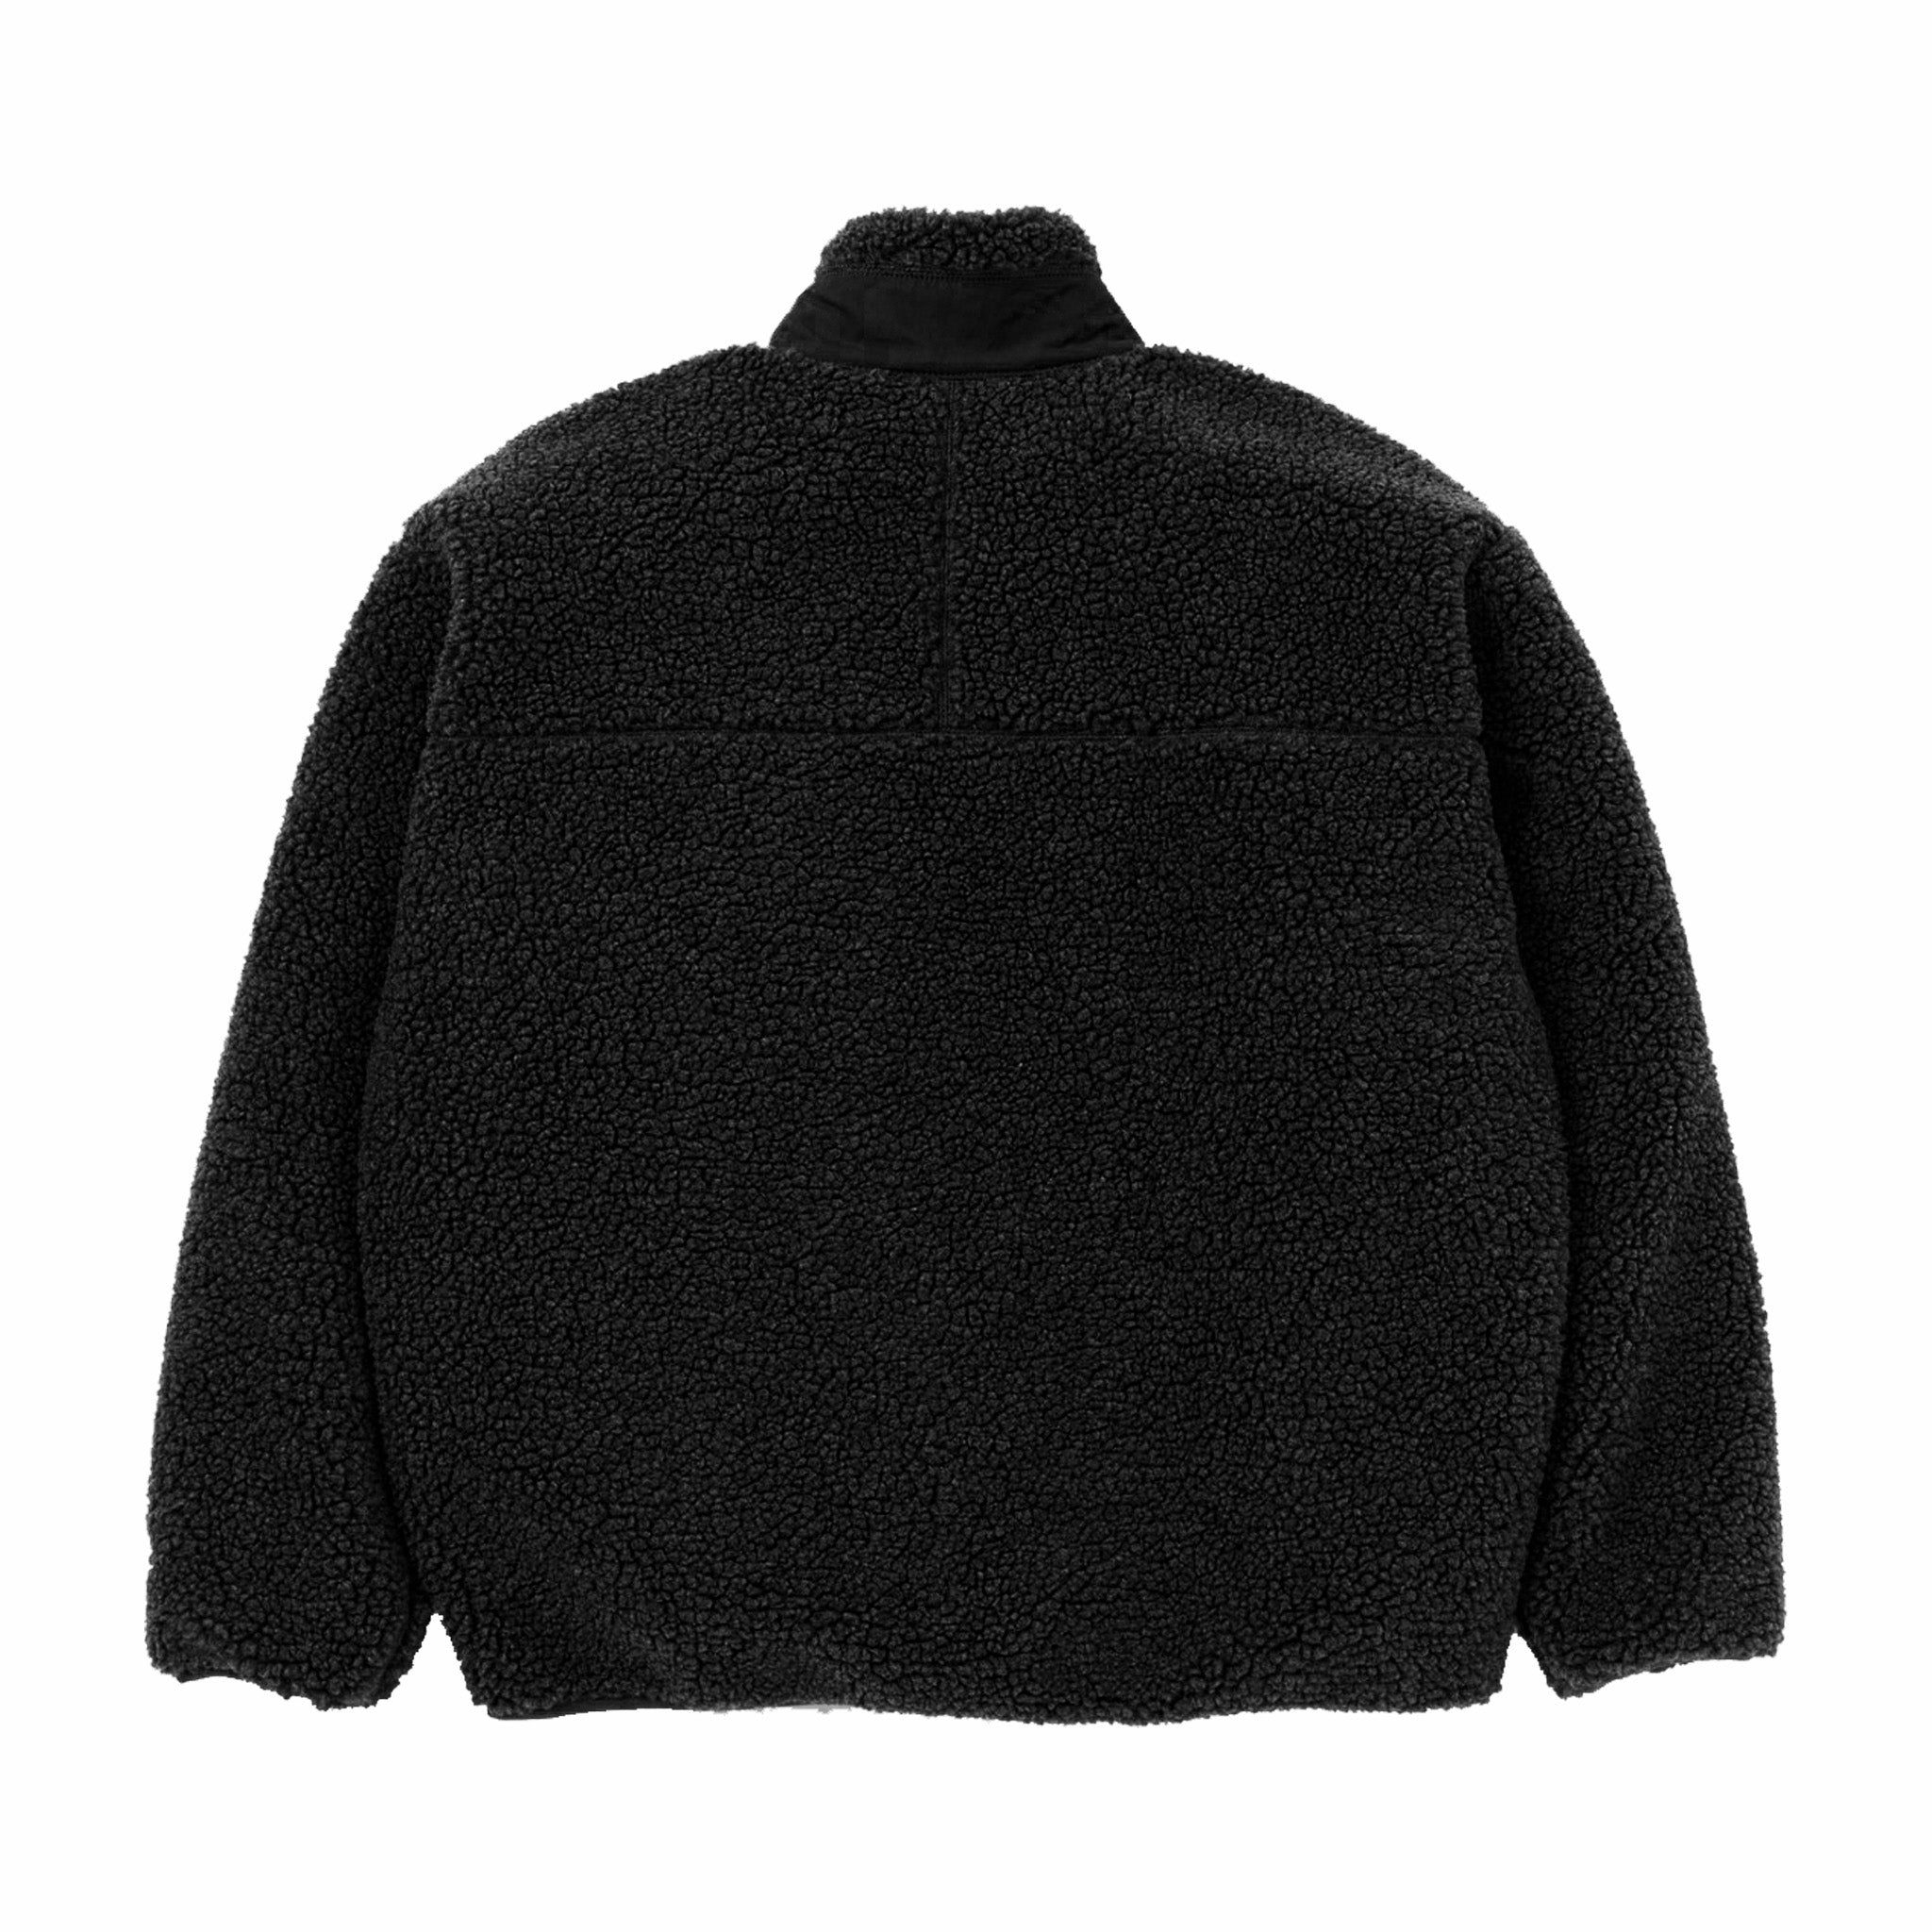 Neighborhood Boa Fleece Jacket (Black) - August Shop